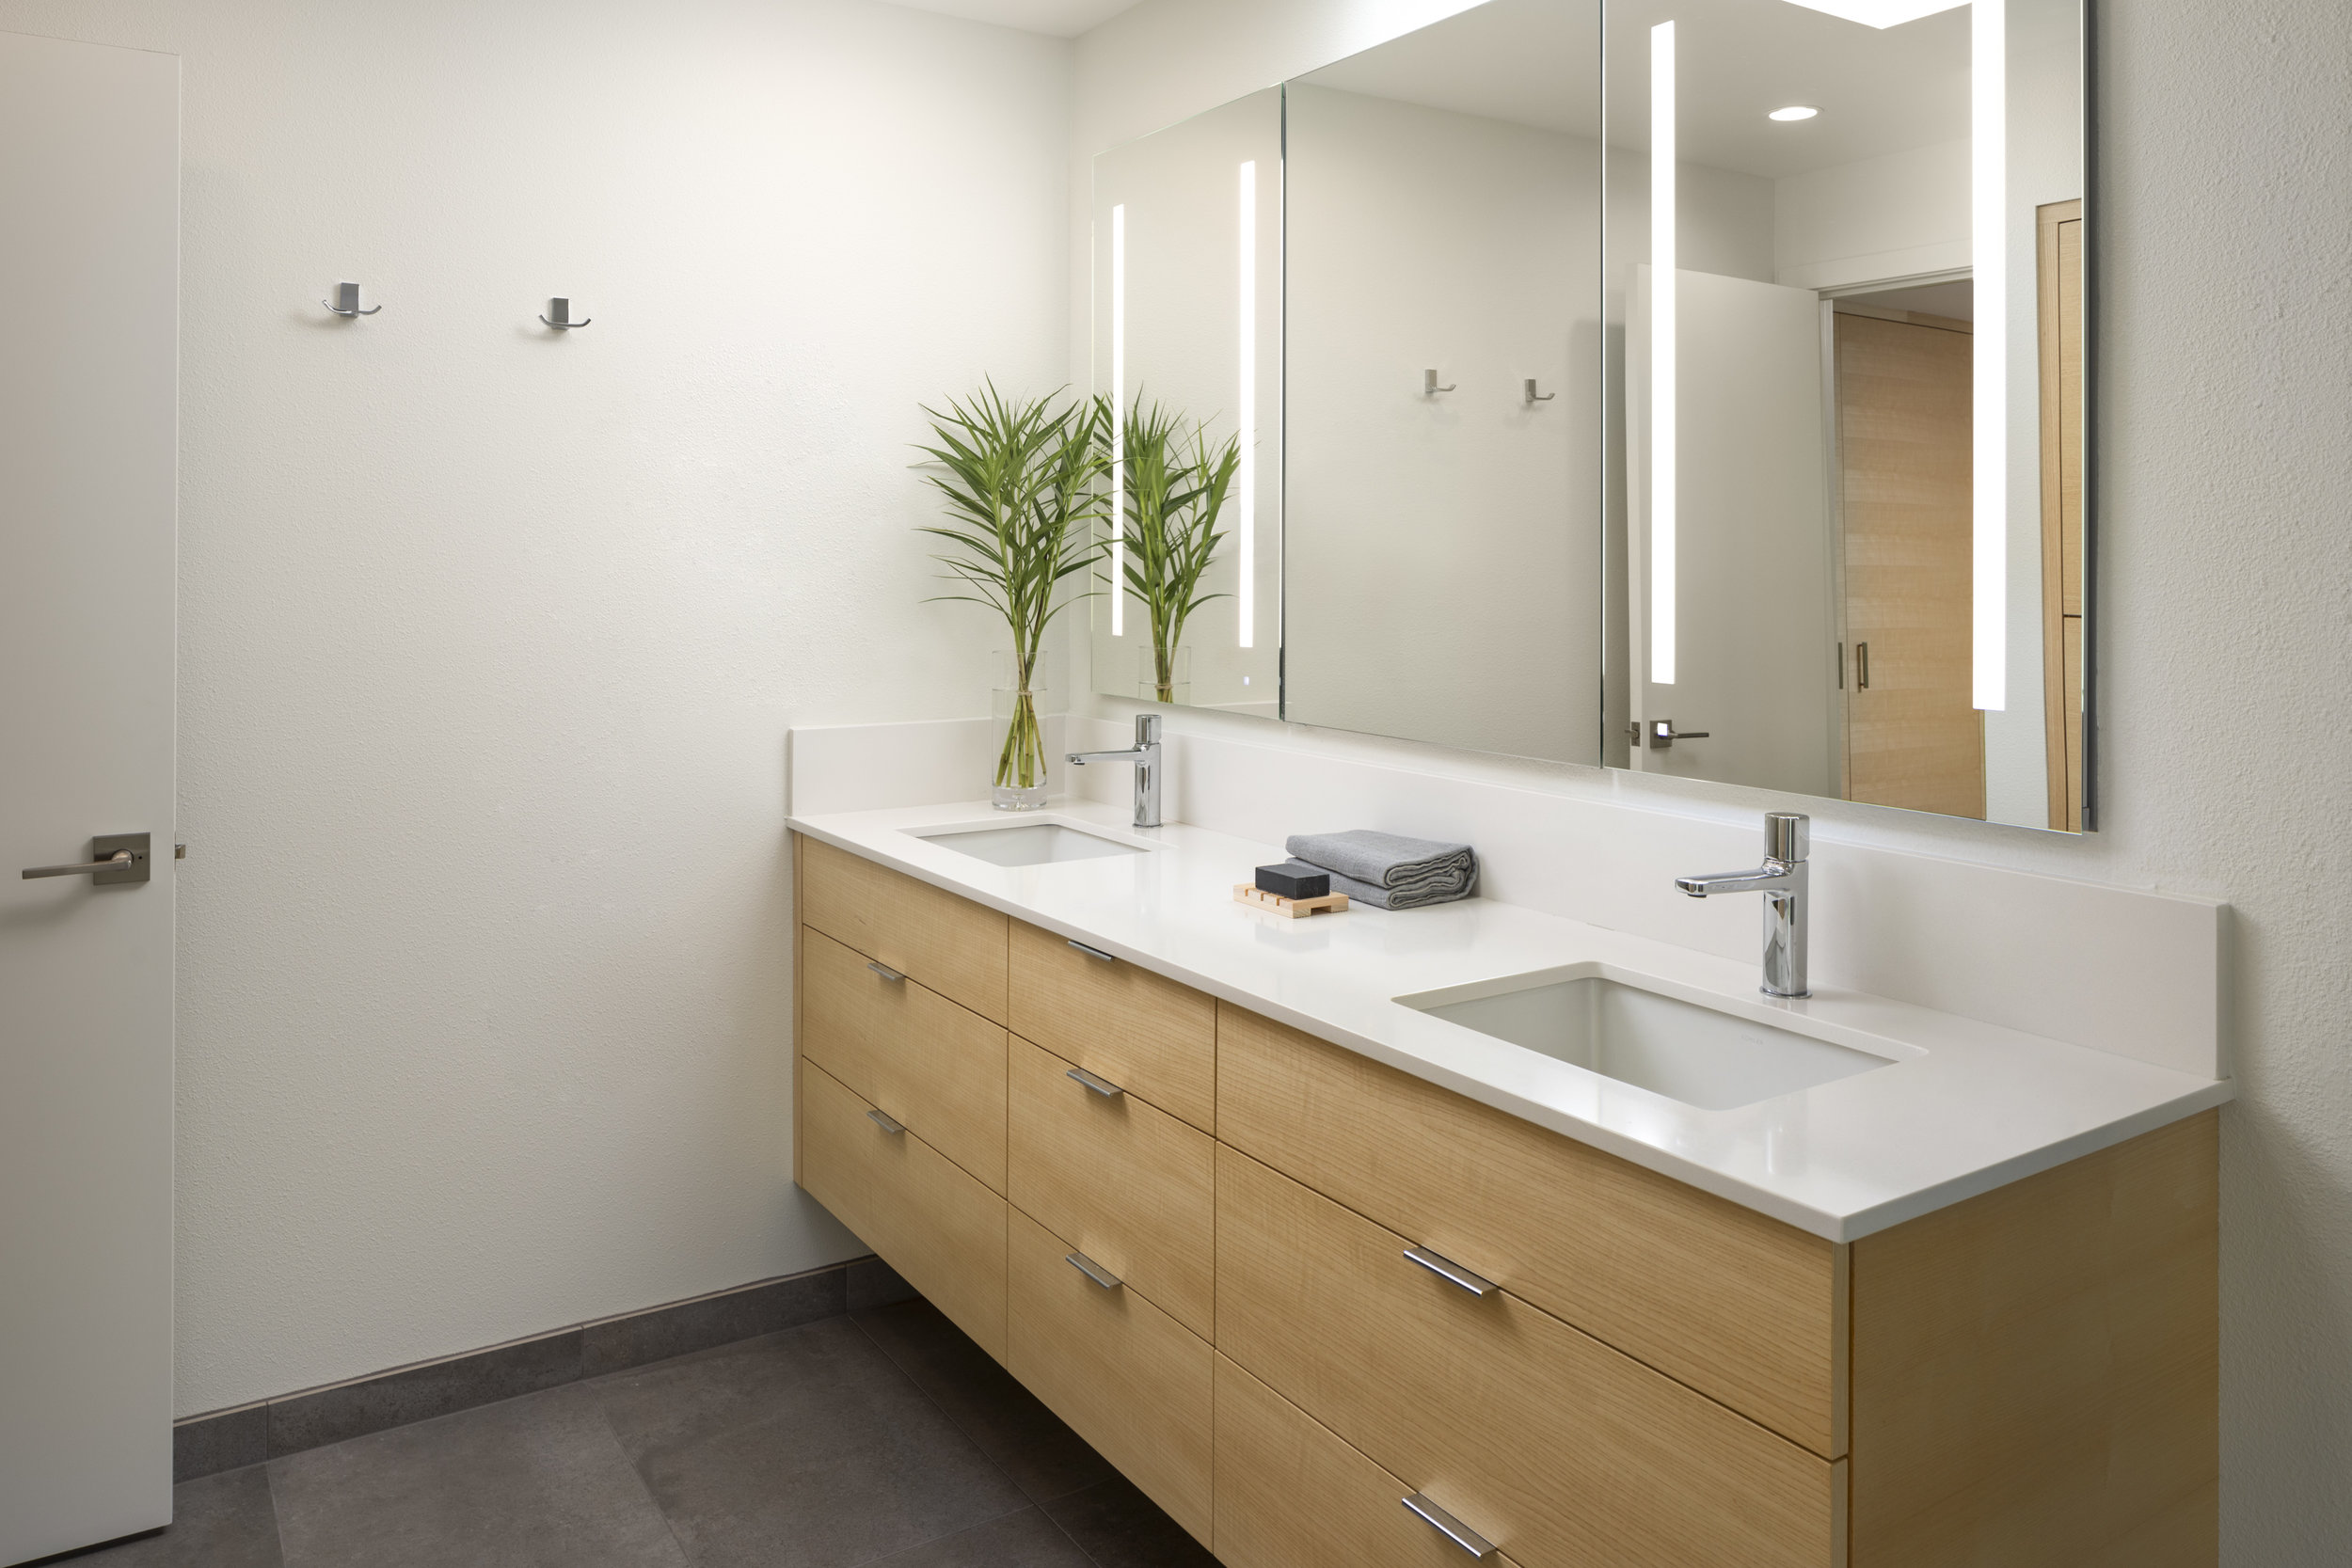 Bathroom interior design by Jenni Leasia Interior Design in Portland